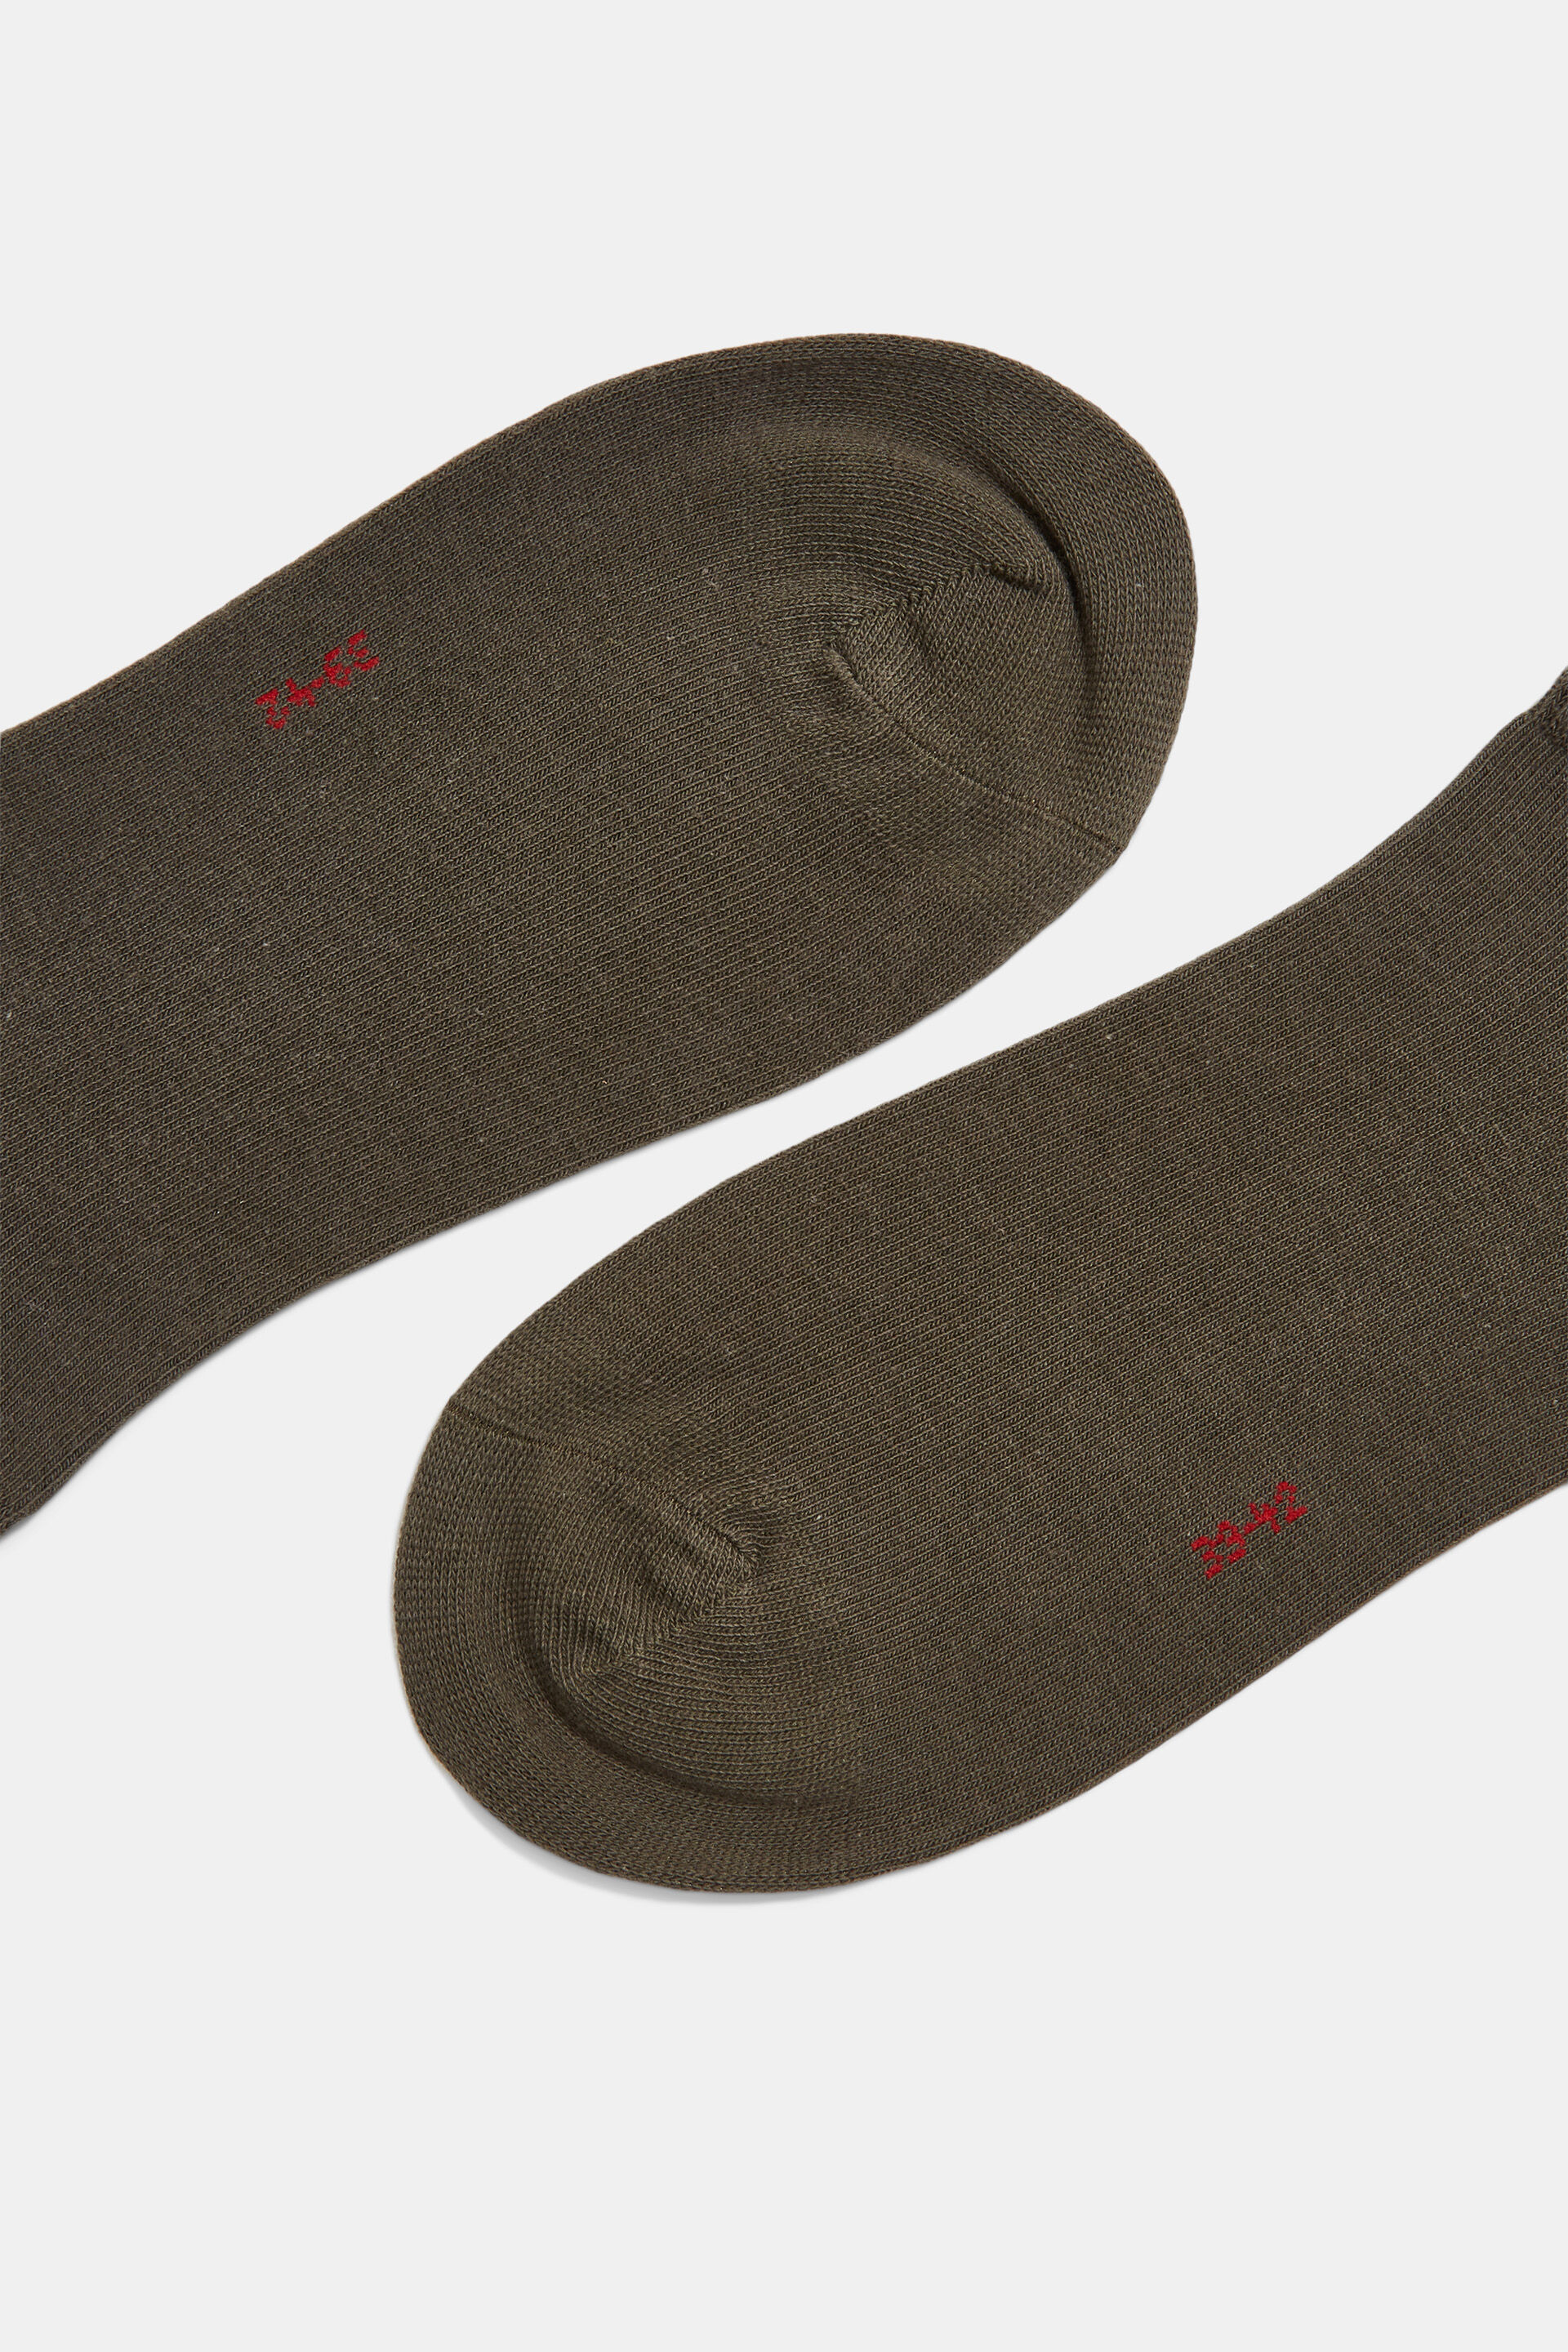 Esprit 2er-Pack Bio-Baumwolle aus Sneaker-Socken